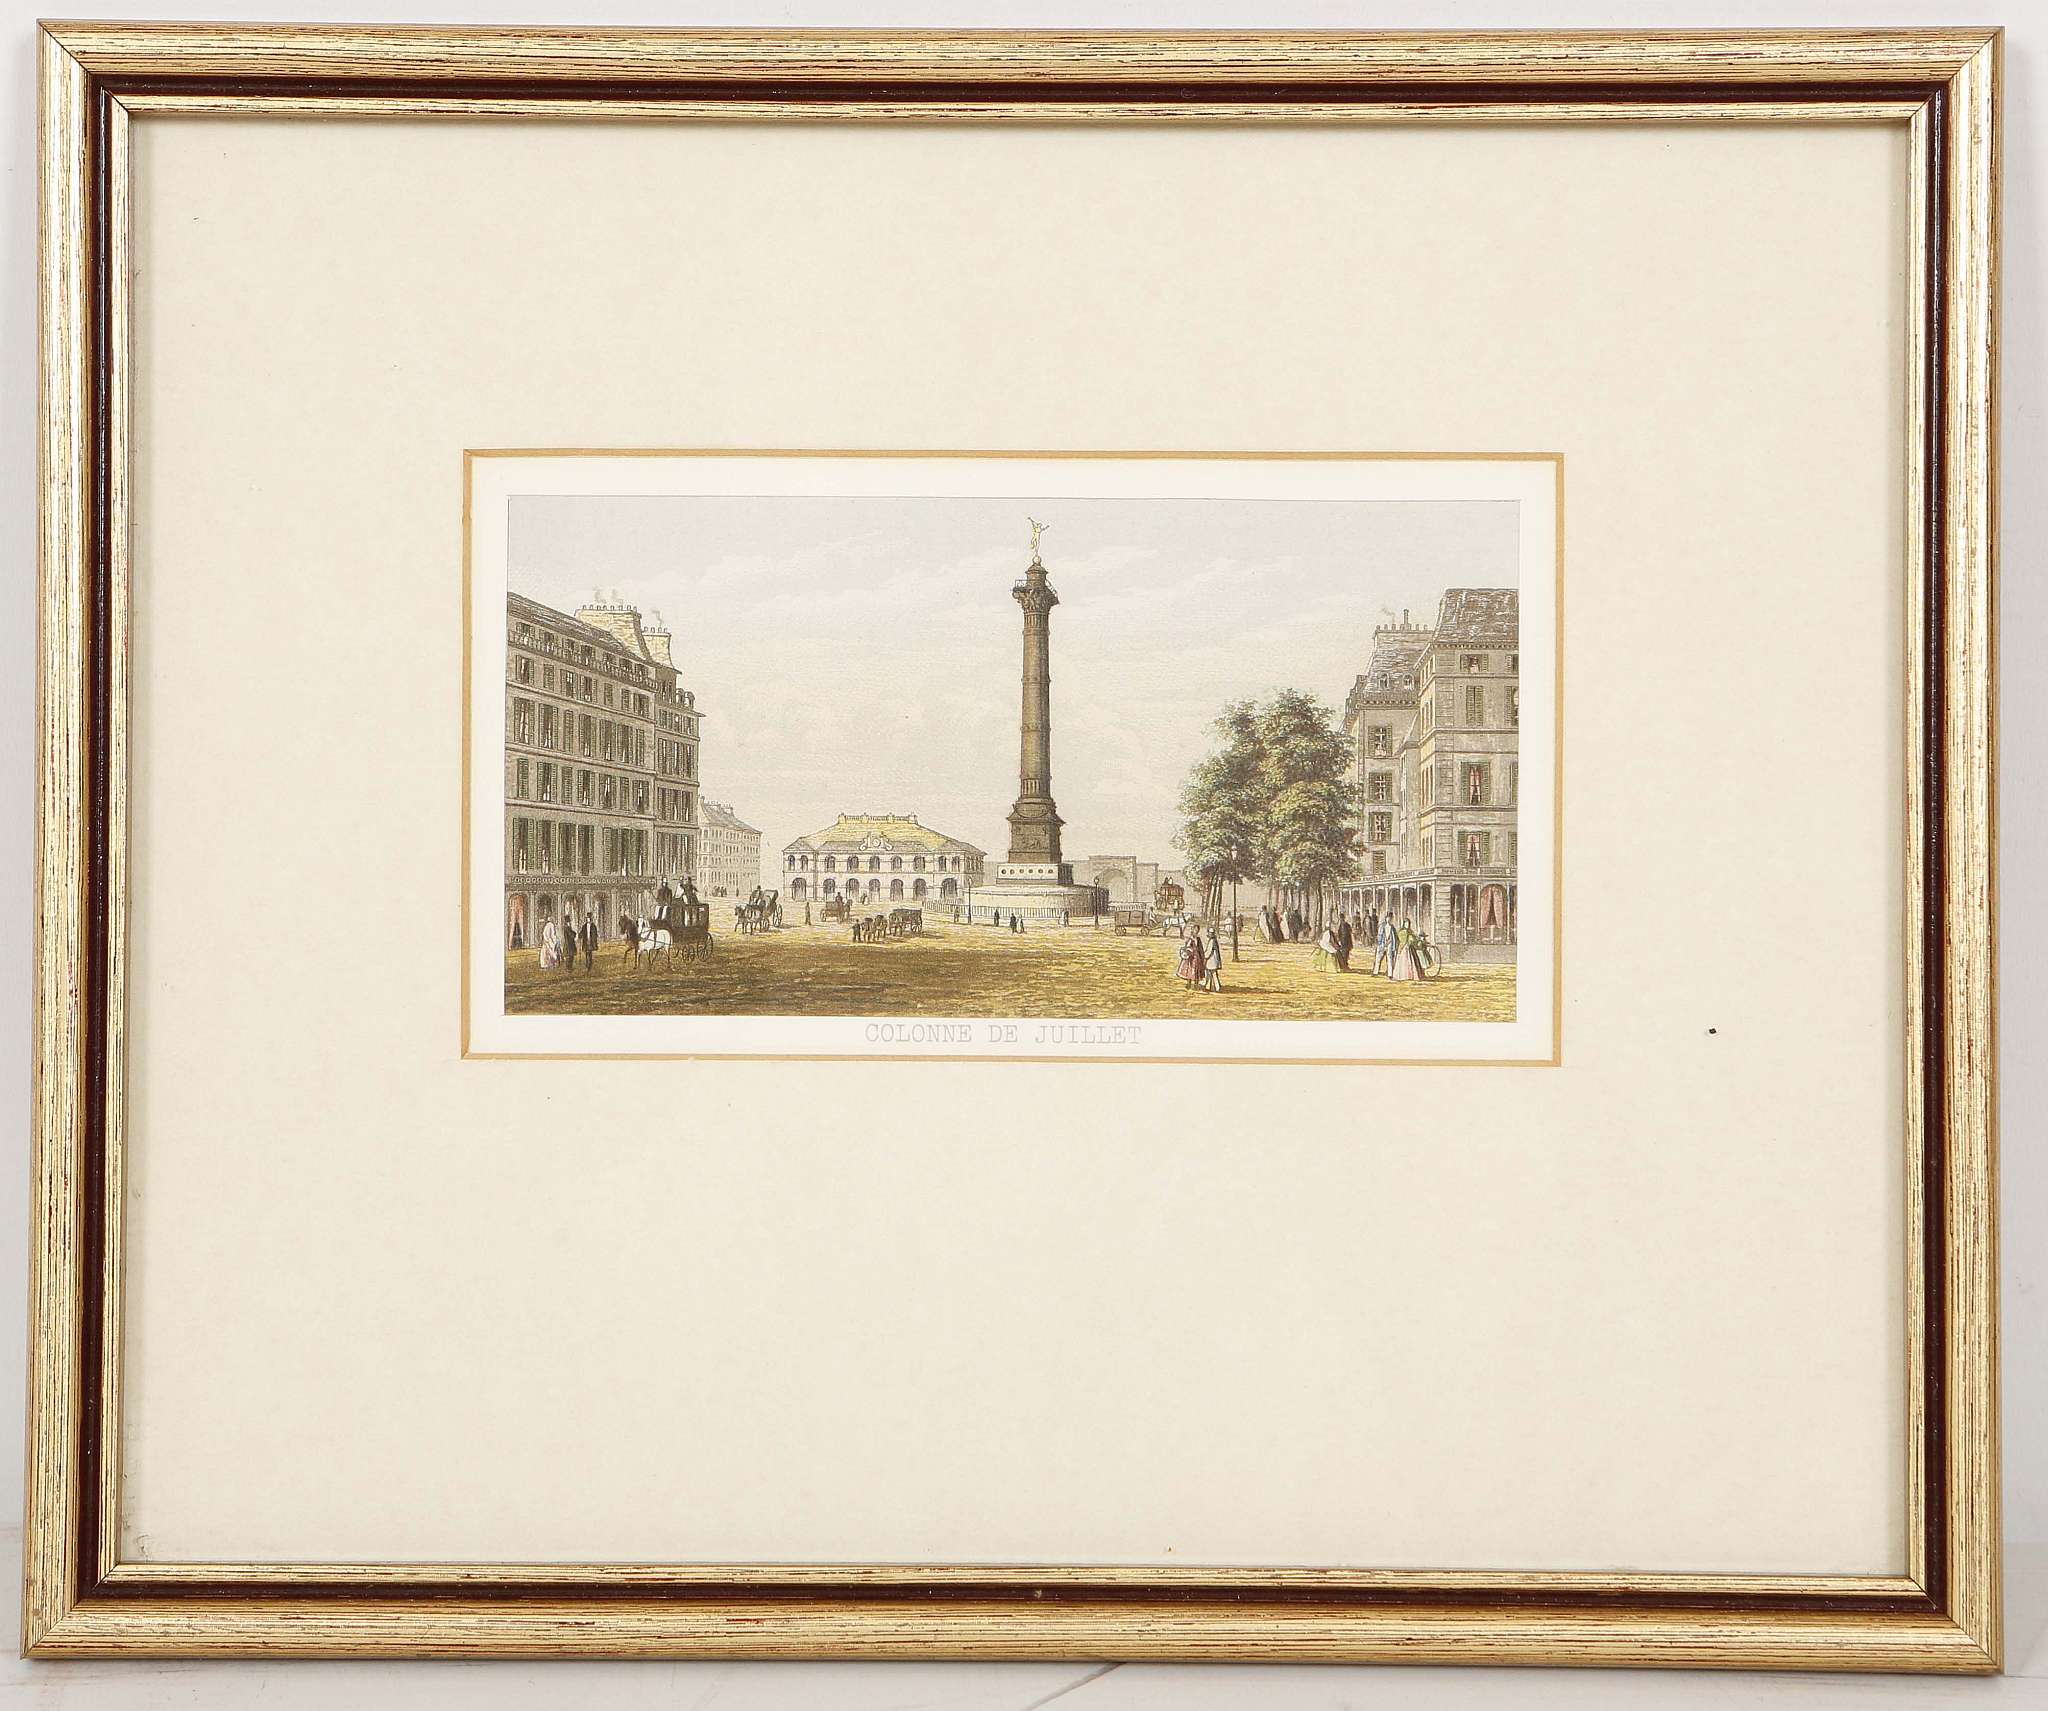 A set of four mounted and framed Baxter prints; 'Colonne de Juillet', 'Le Pantheon', Hotel de